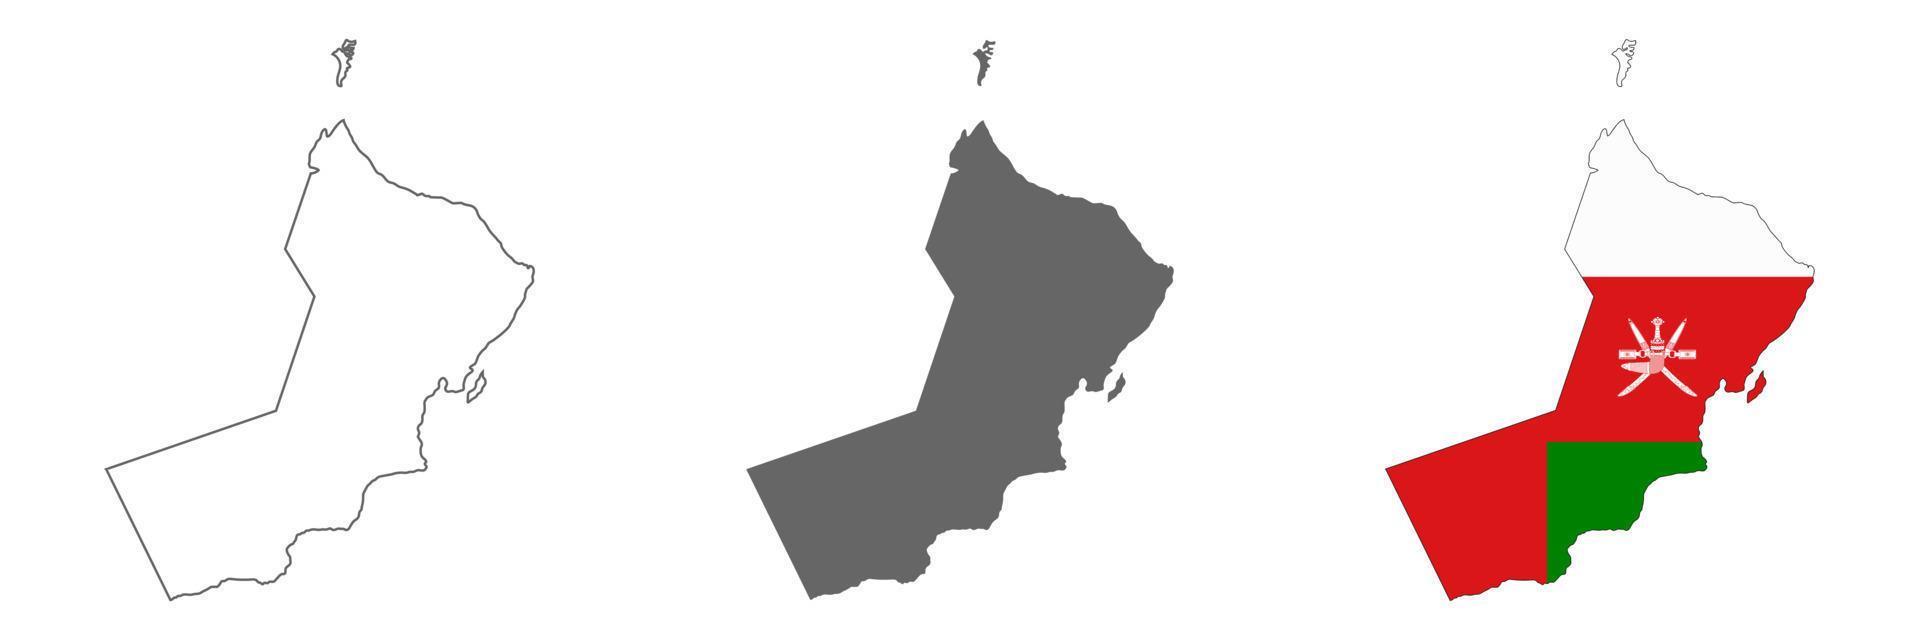 mapa altamente detalhado do sultanato de Omã com bordas isoladas no fundo vetor